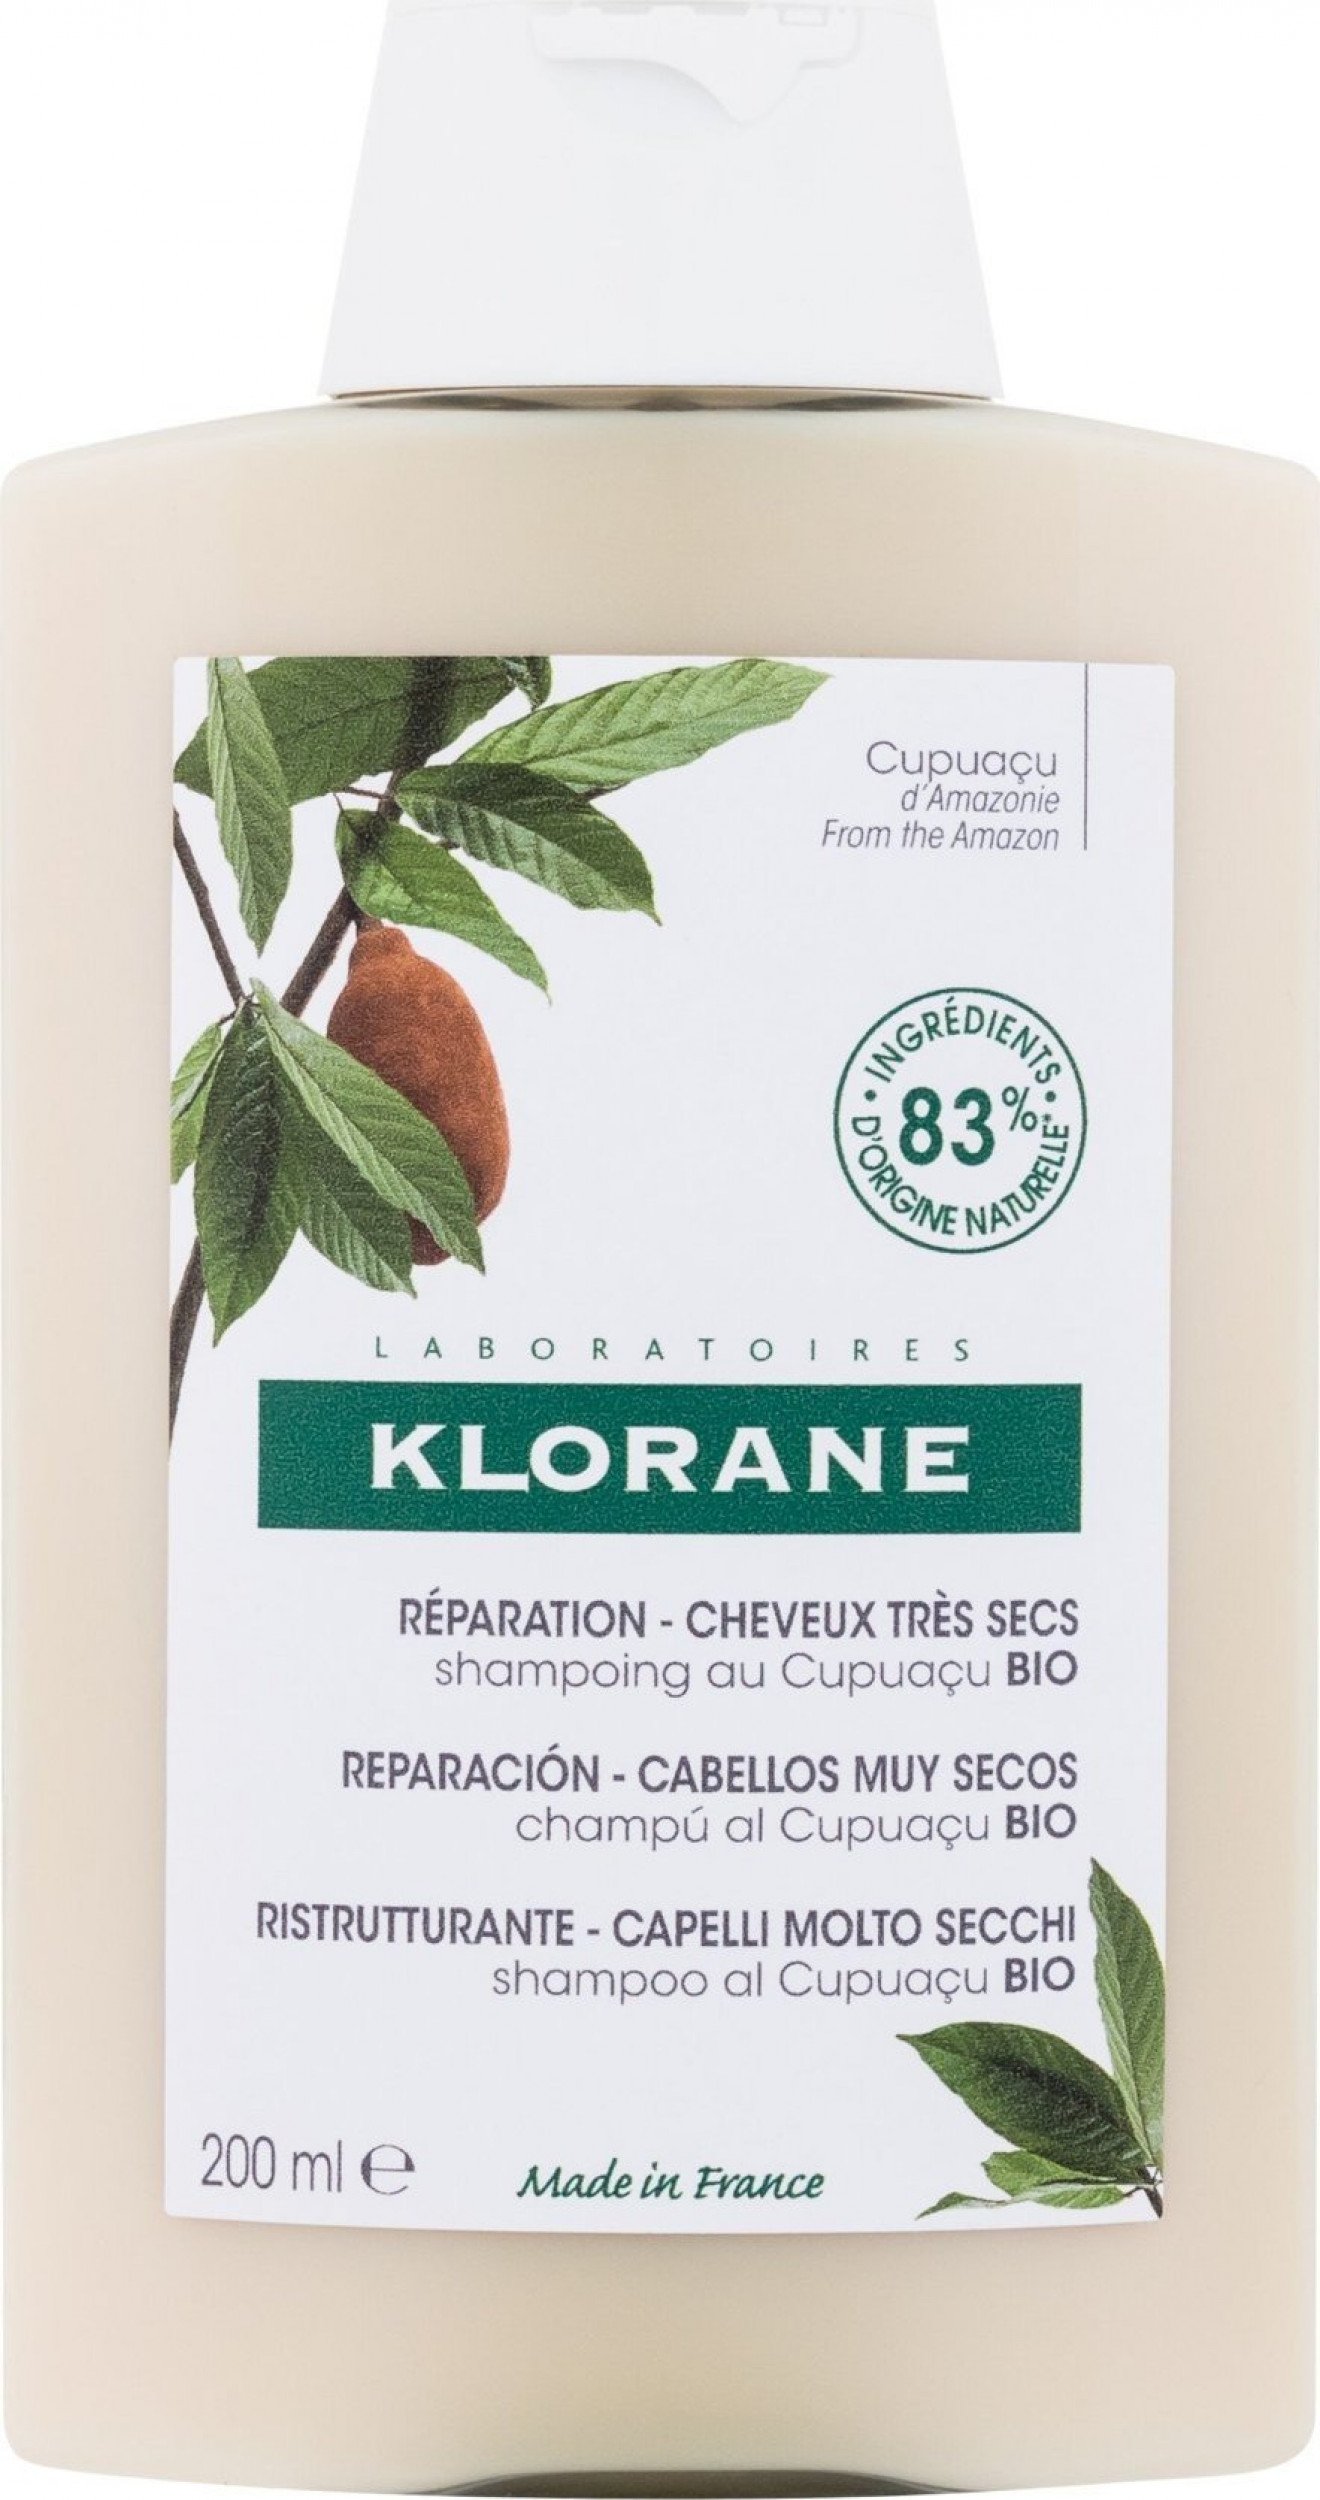 Klorane Klorane, Sampon cu Unt Bio de Cupuacu, 200 ml - Data de expirare lunga!